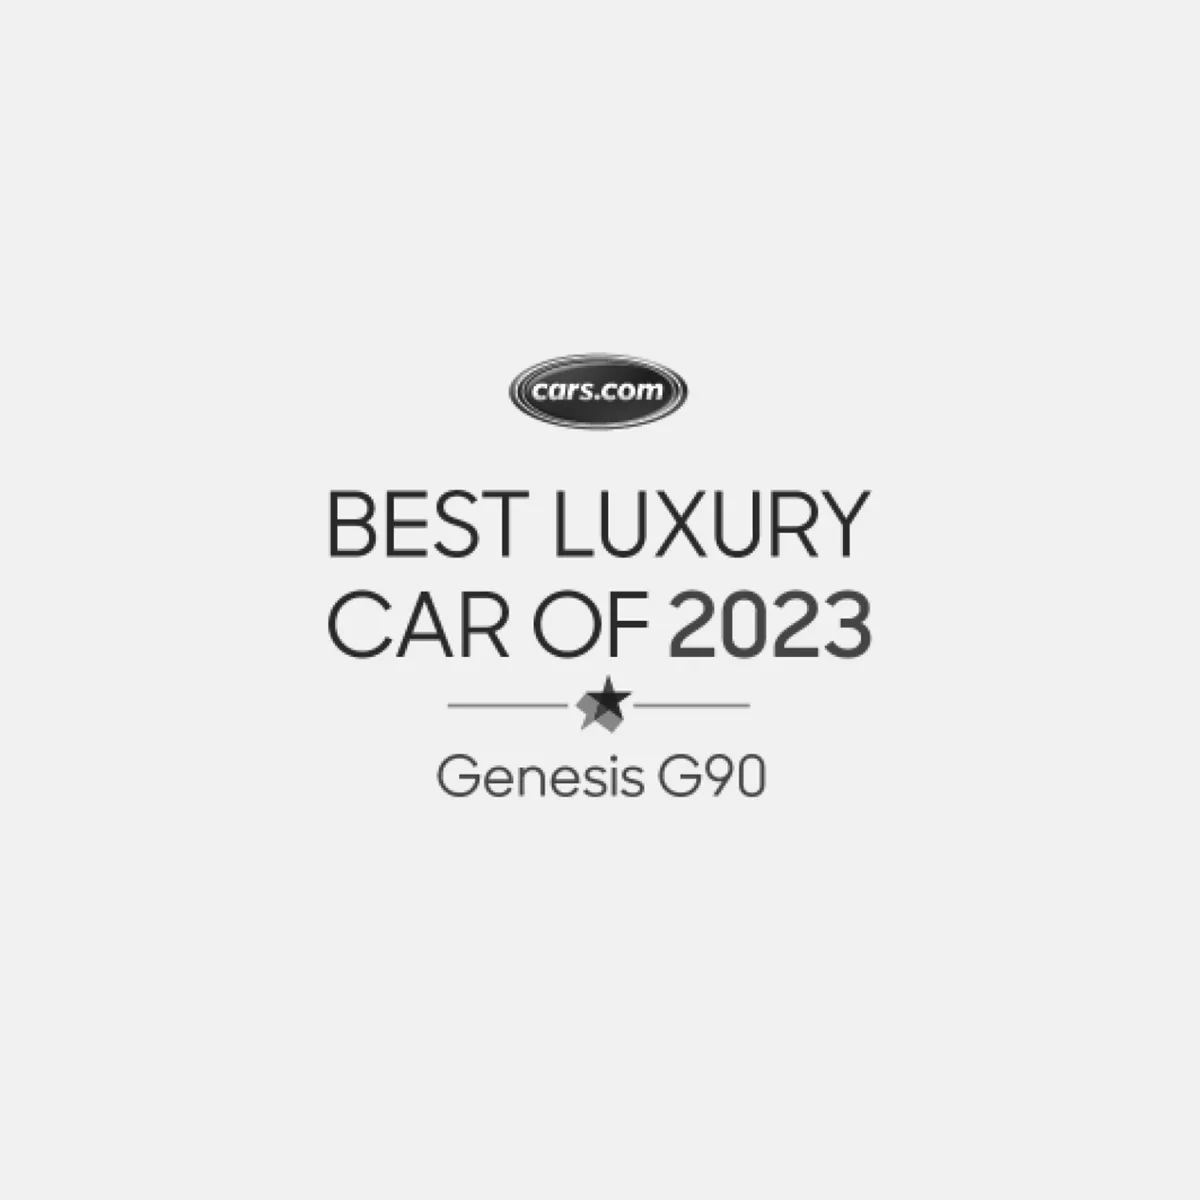 Cars.com best luxury car of 2023 Genesis G90.